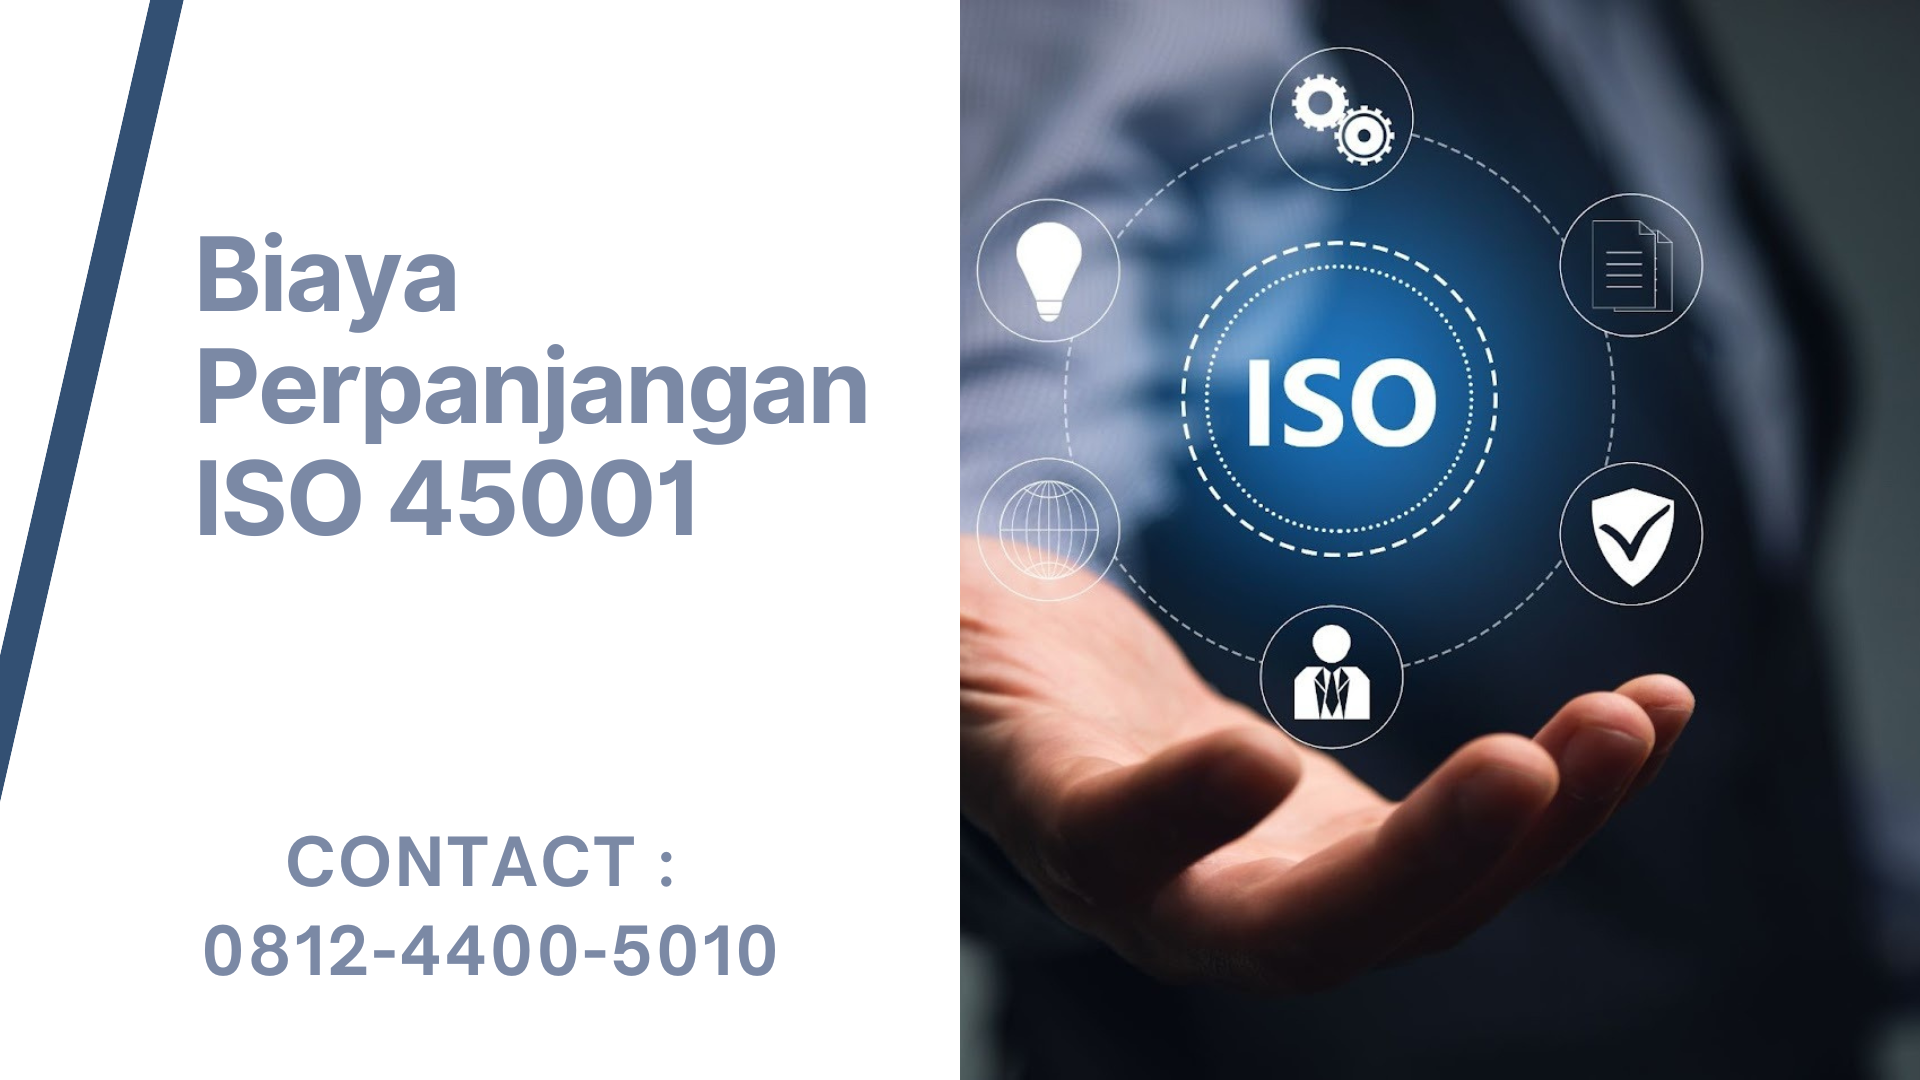 Biaya Perpanjangan ISO 45001